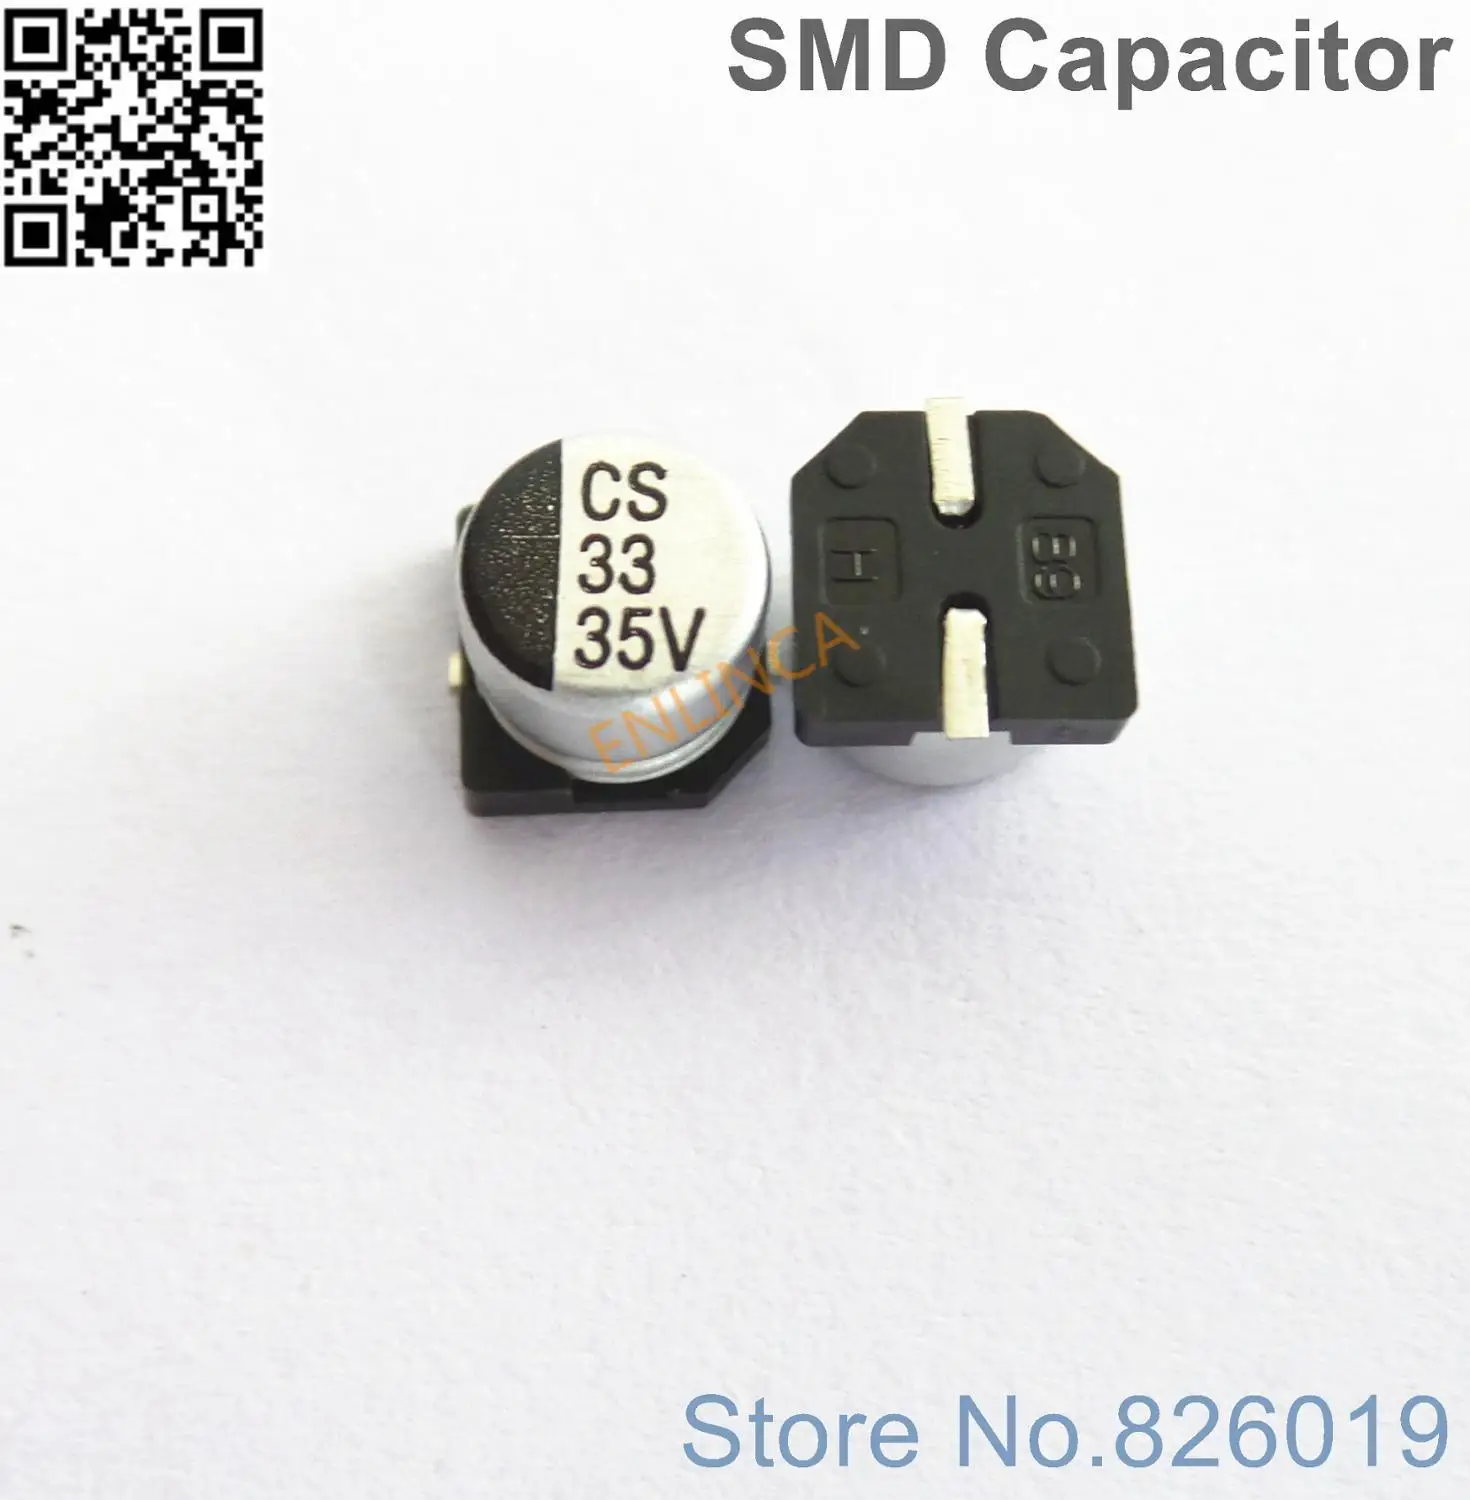 

250pcs/lot 35v 33uf SMD Aluminum Electrolytic Capacitors size 6.3*5.4 33uf 35v